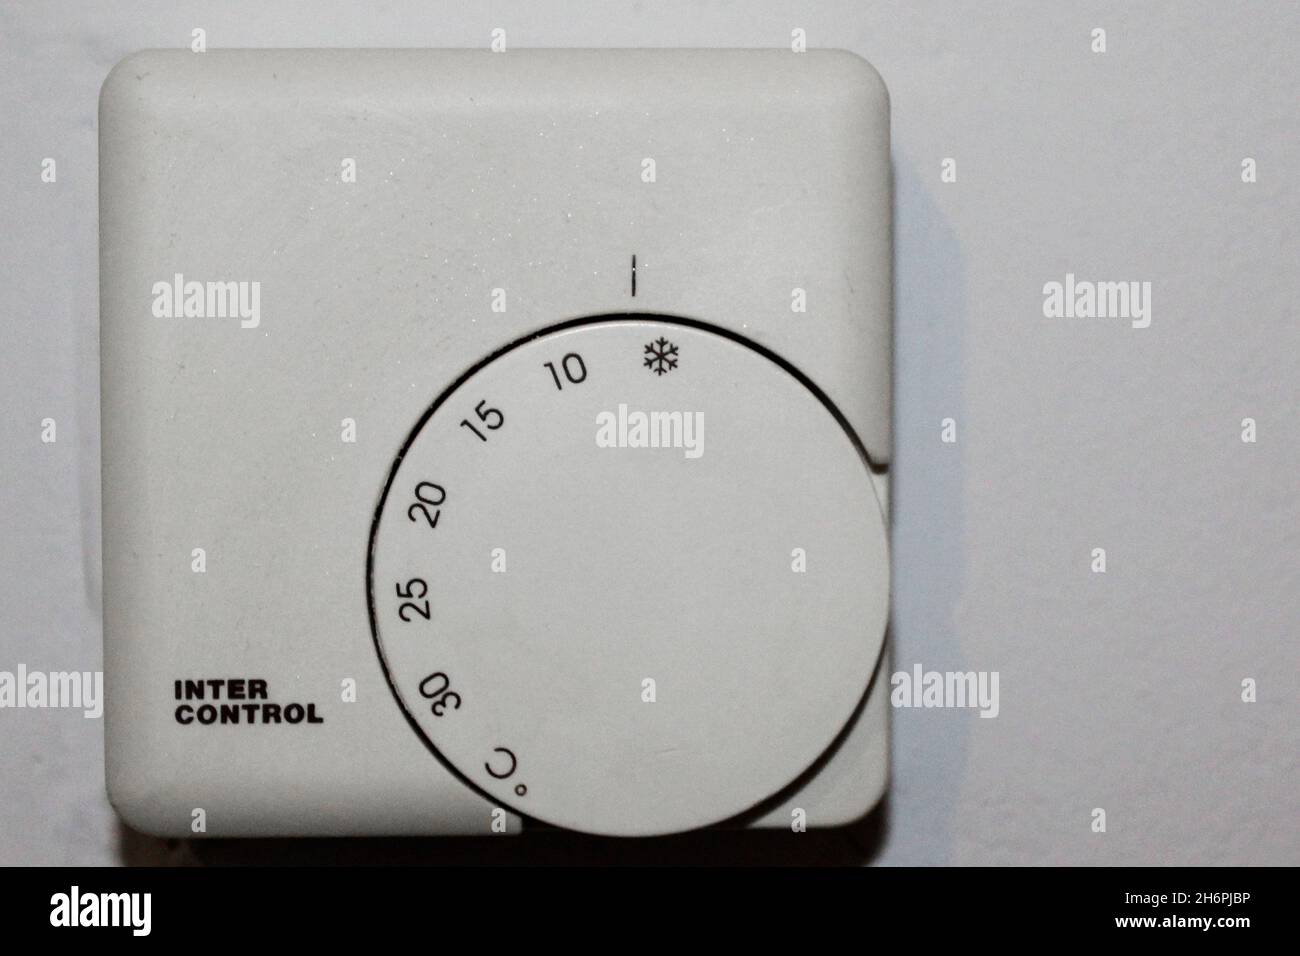 Weißer termostato zur Wärmeregulierung von 0 bis 30 Grad einstellbar, in einer Wohnung an einer Wand, komplett abgestellt. Foto Stock